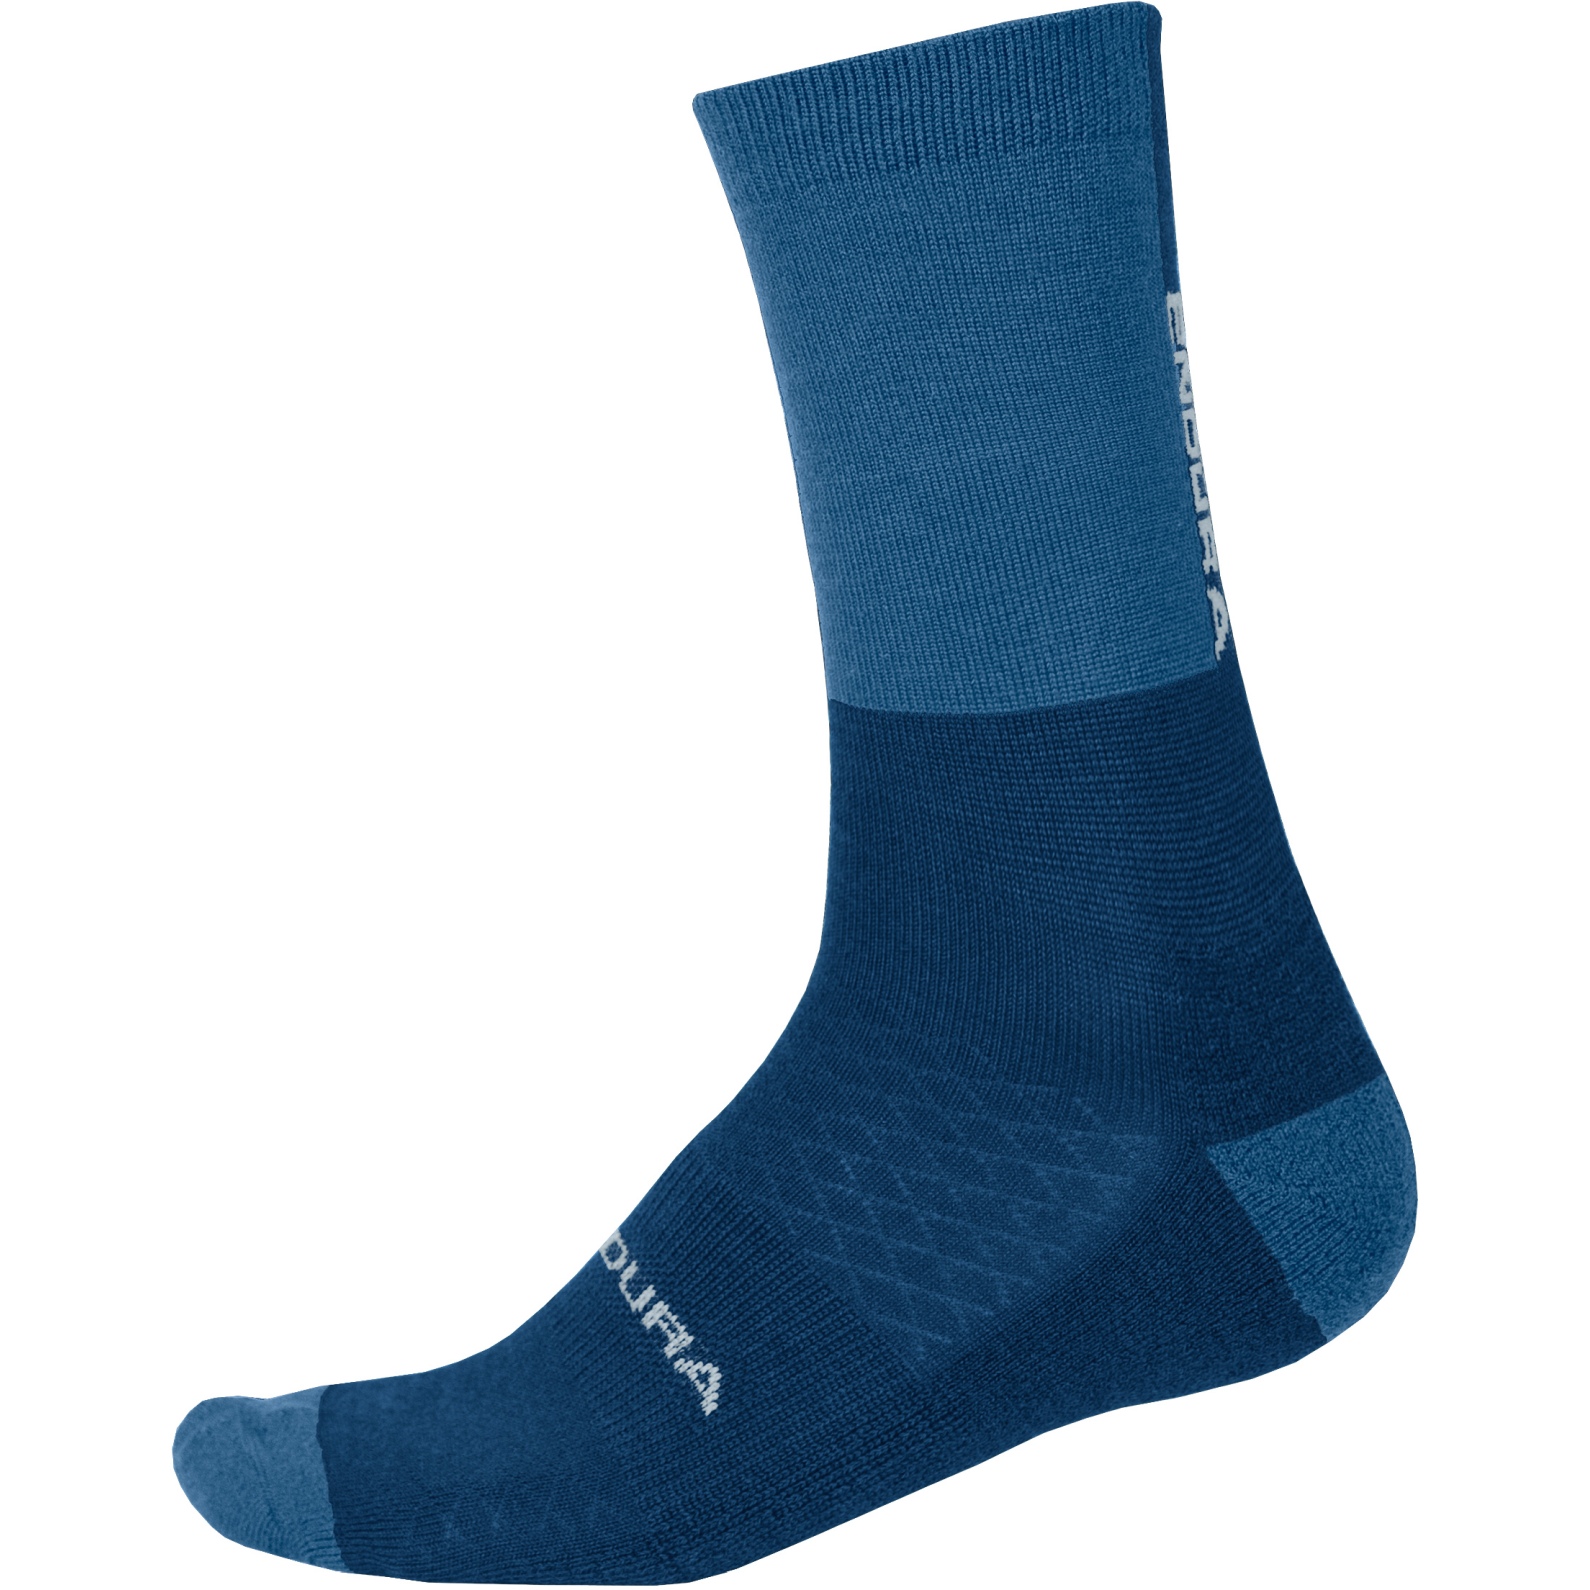 Produktbild von Endura BaaBaa Merino Winter Socken - blaubeere